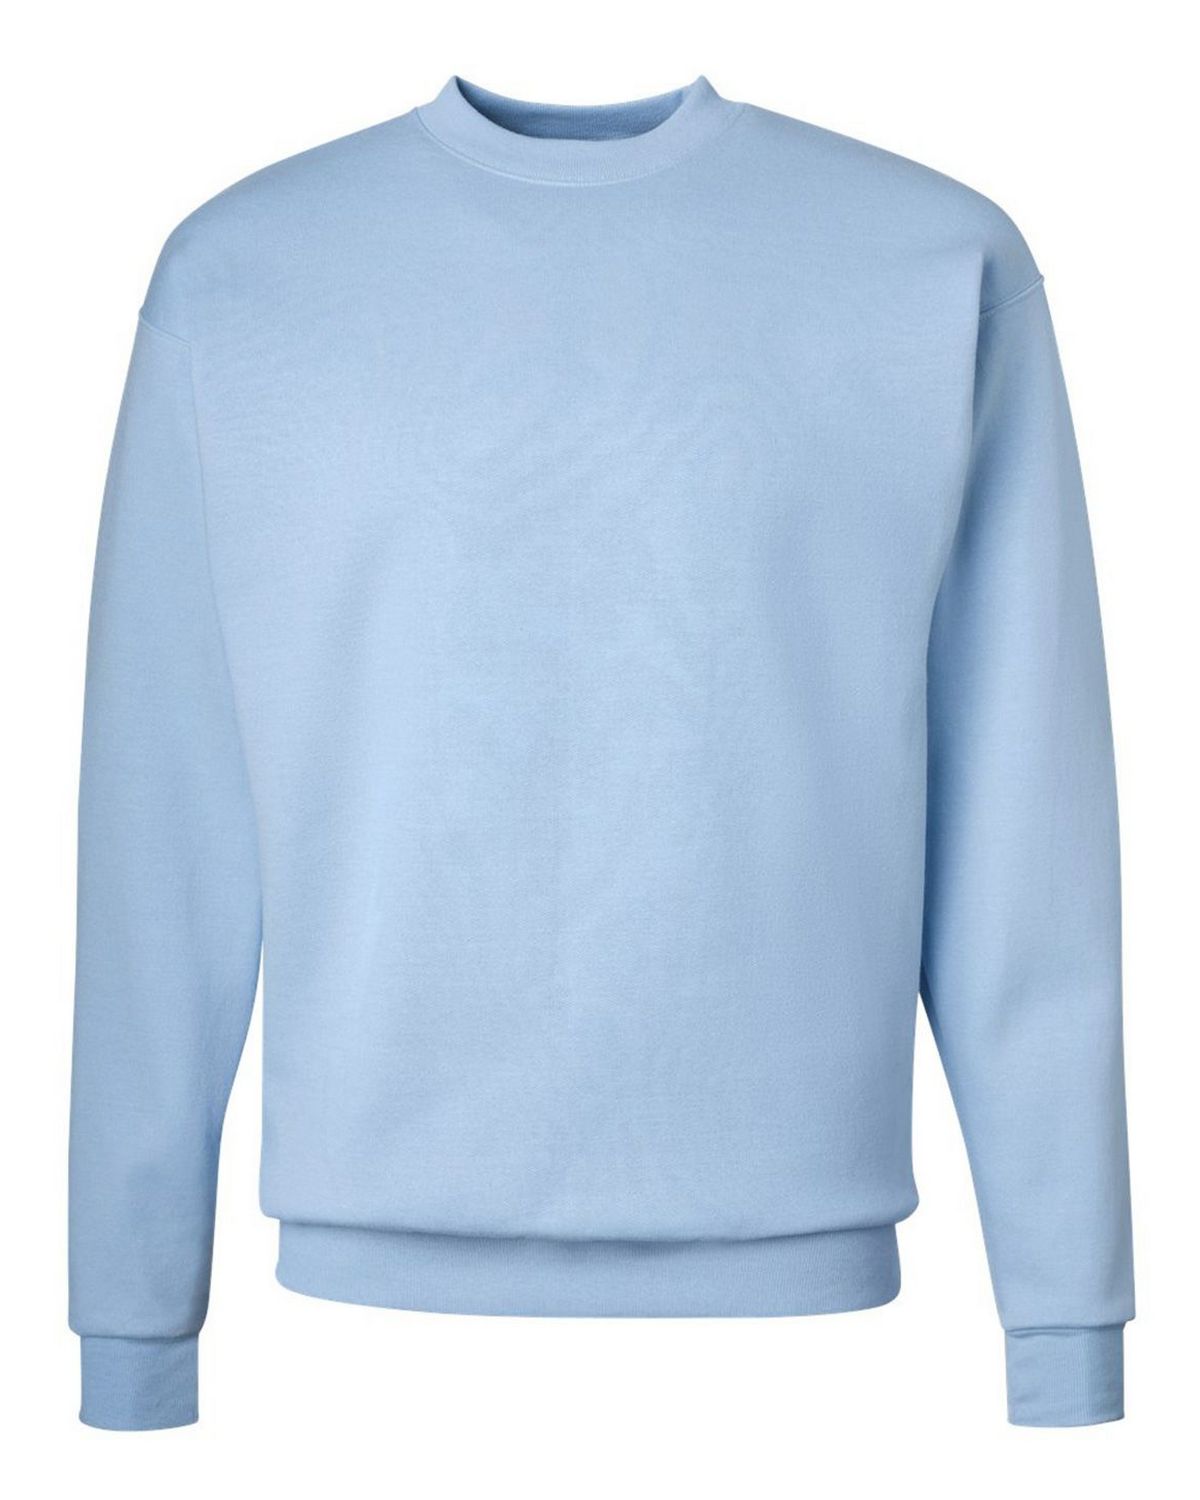 Hanes P160 | Hanes P160 Men's Sweatshirt